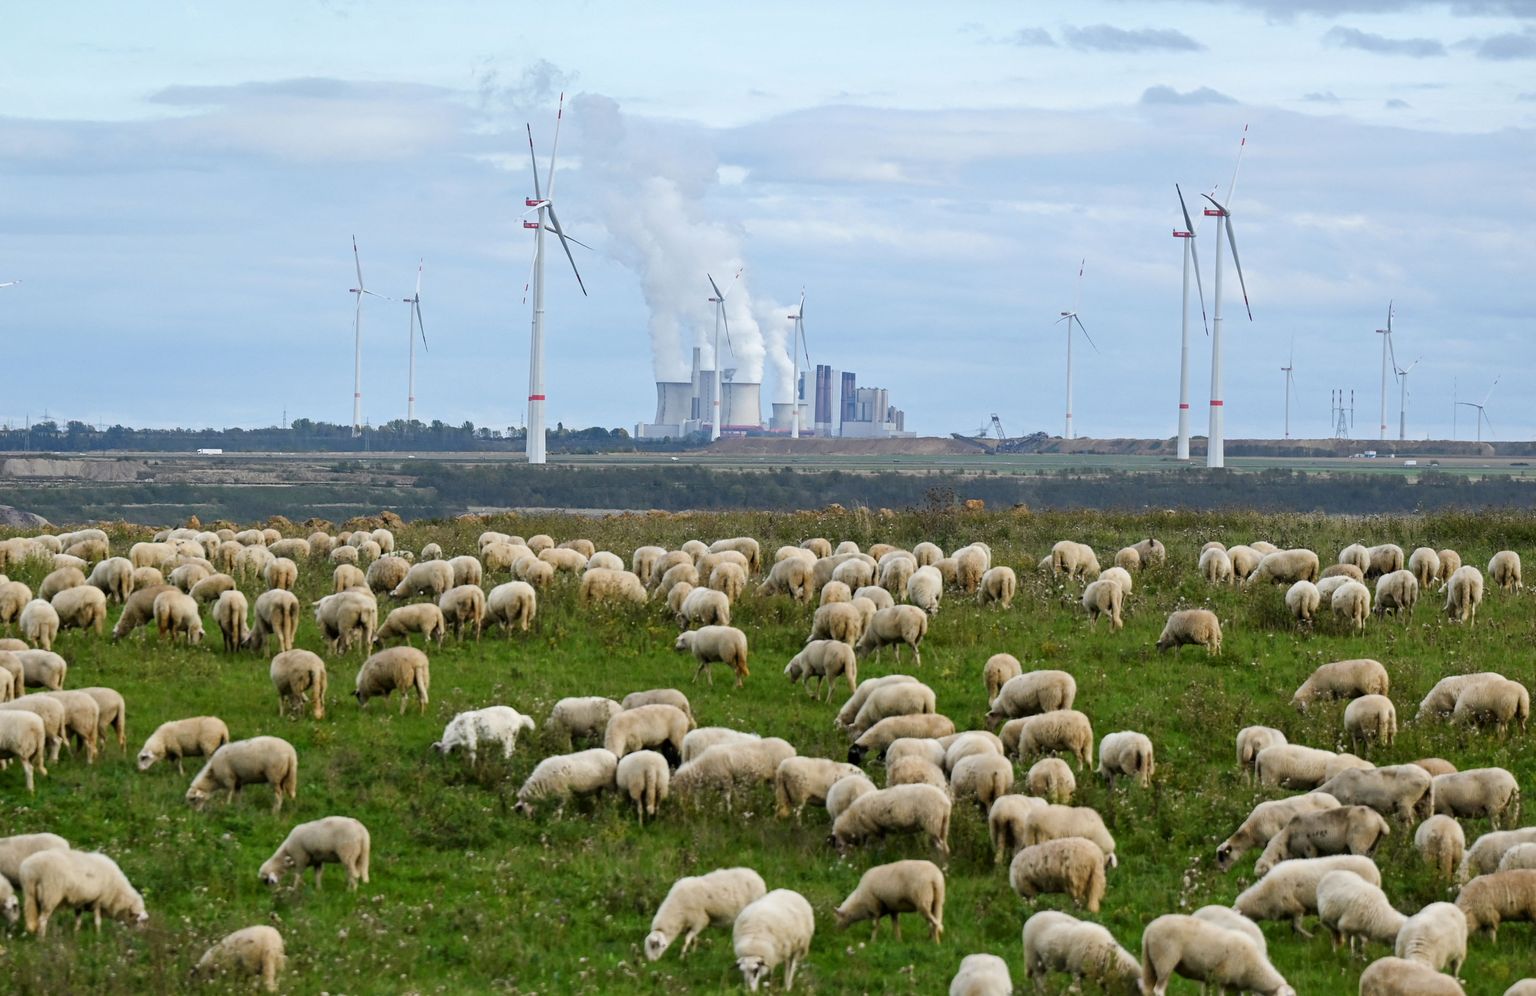 RWE-le kuuluv söeküttel töötav elektrijaam Lääne-Saksamaal. Hoolimata sellest, et ettevõte on oma söest loobumist Saksamaal 2030. aastaks ettepoole lükanud, kaebab ettevõte Hollandi valitsuse kohtusse, kuna nad on sealseid plaane piiranud.